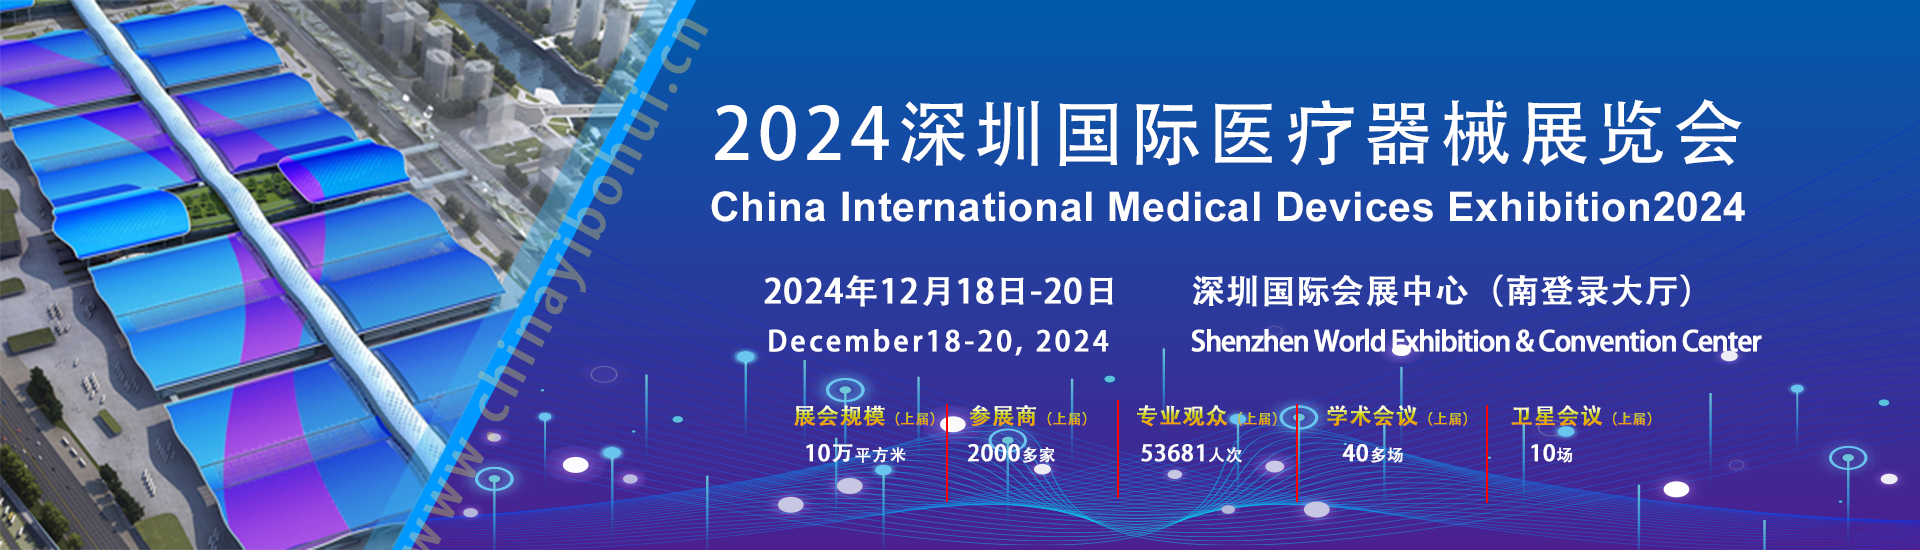 商务部推进医疗领域扩大开放 跨国巨头聚焦中国本土创新